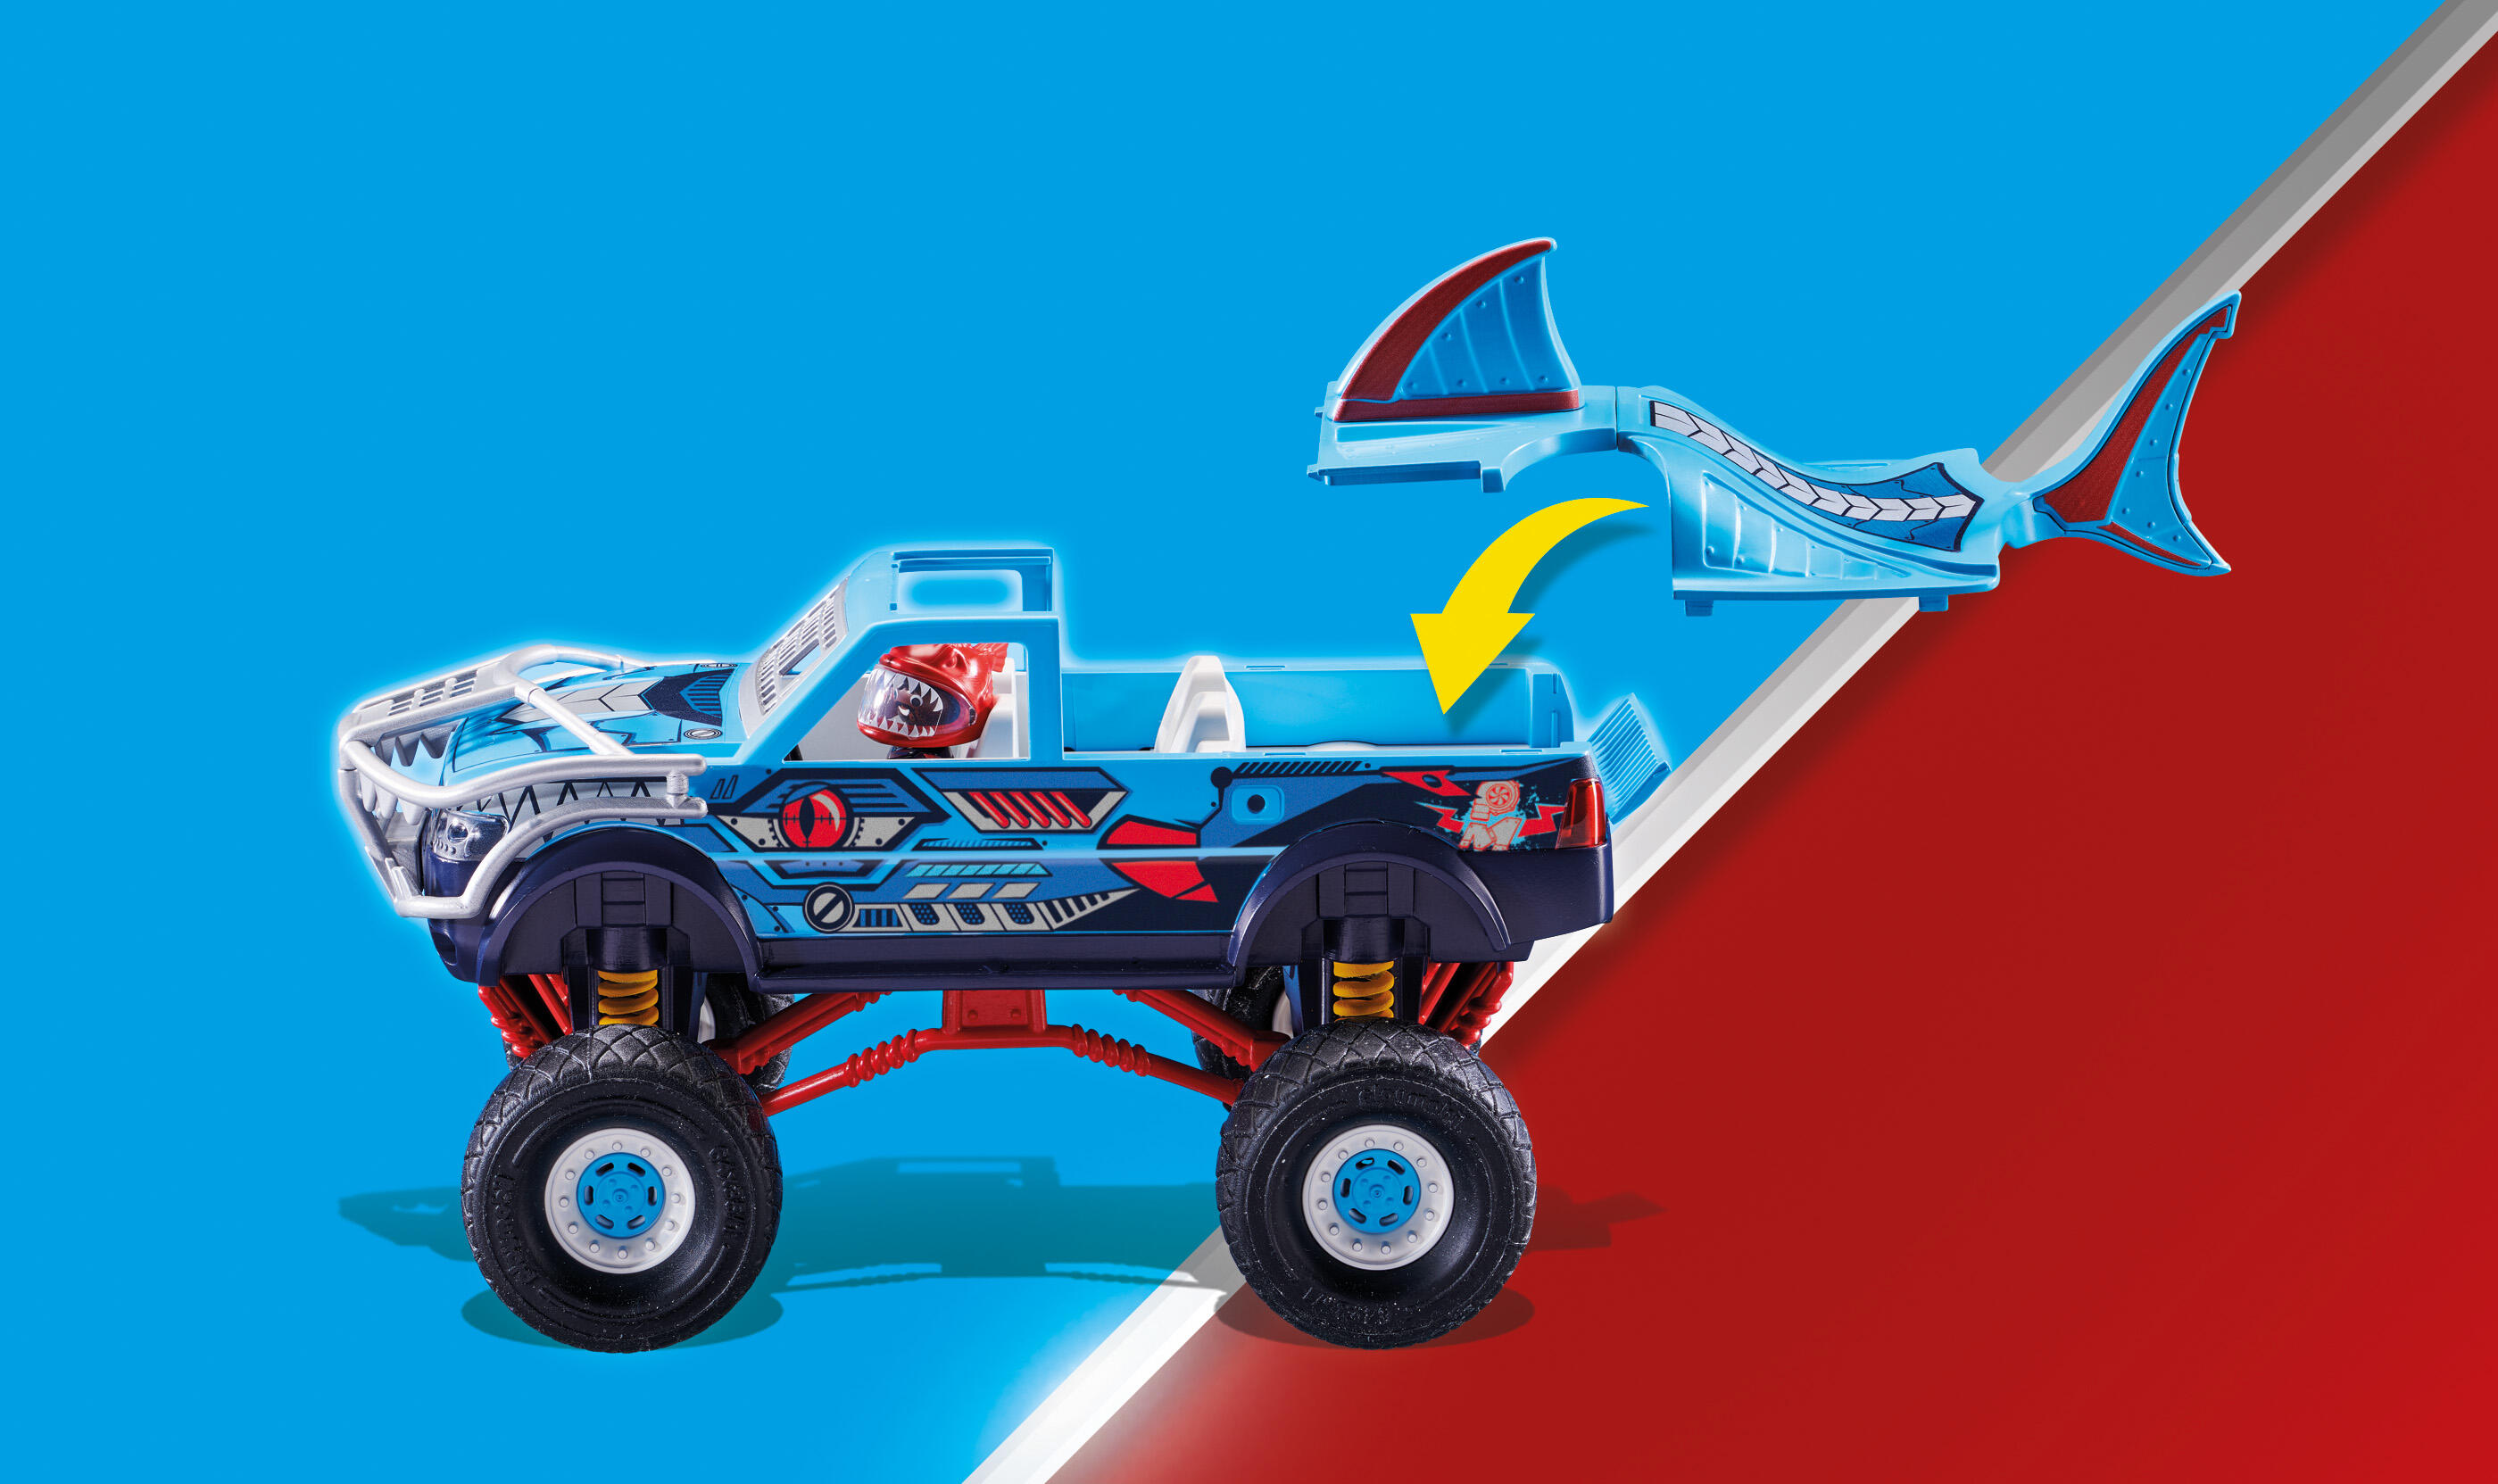 PLAYMOBIL Stunt Show Shark Monster Truck - image 3 of 8